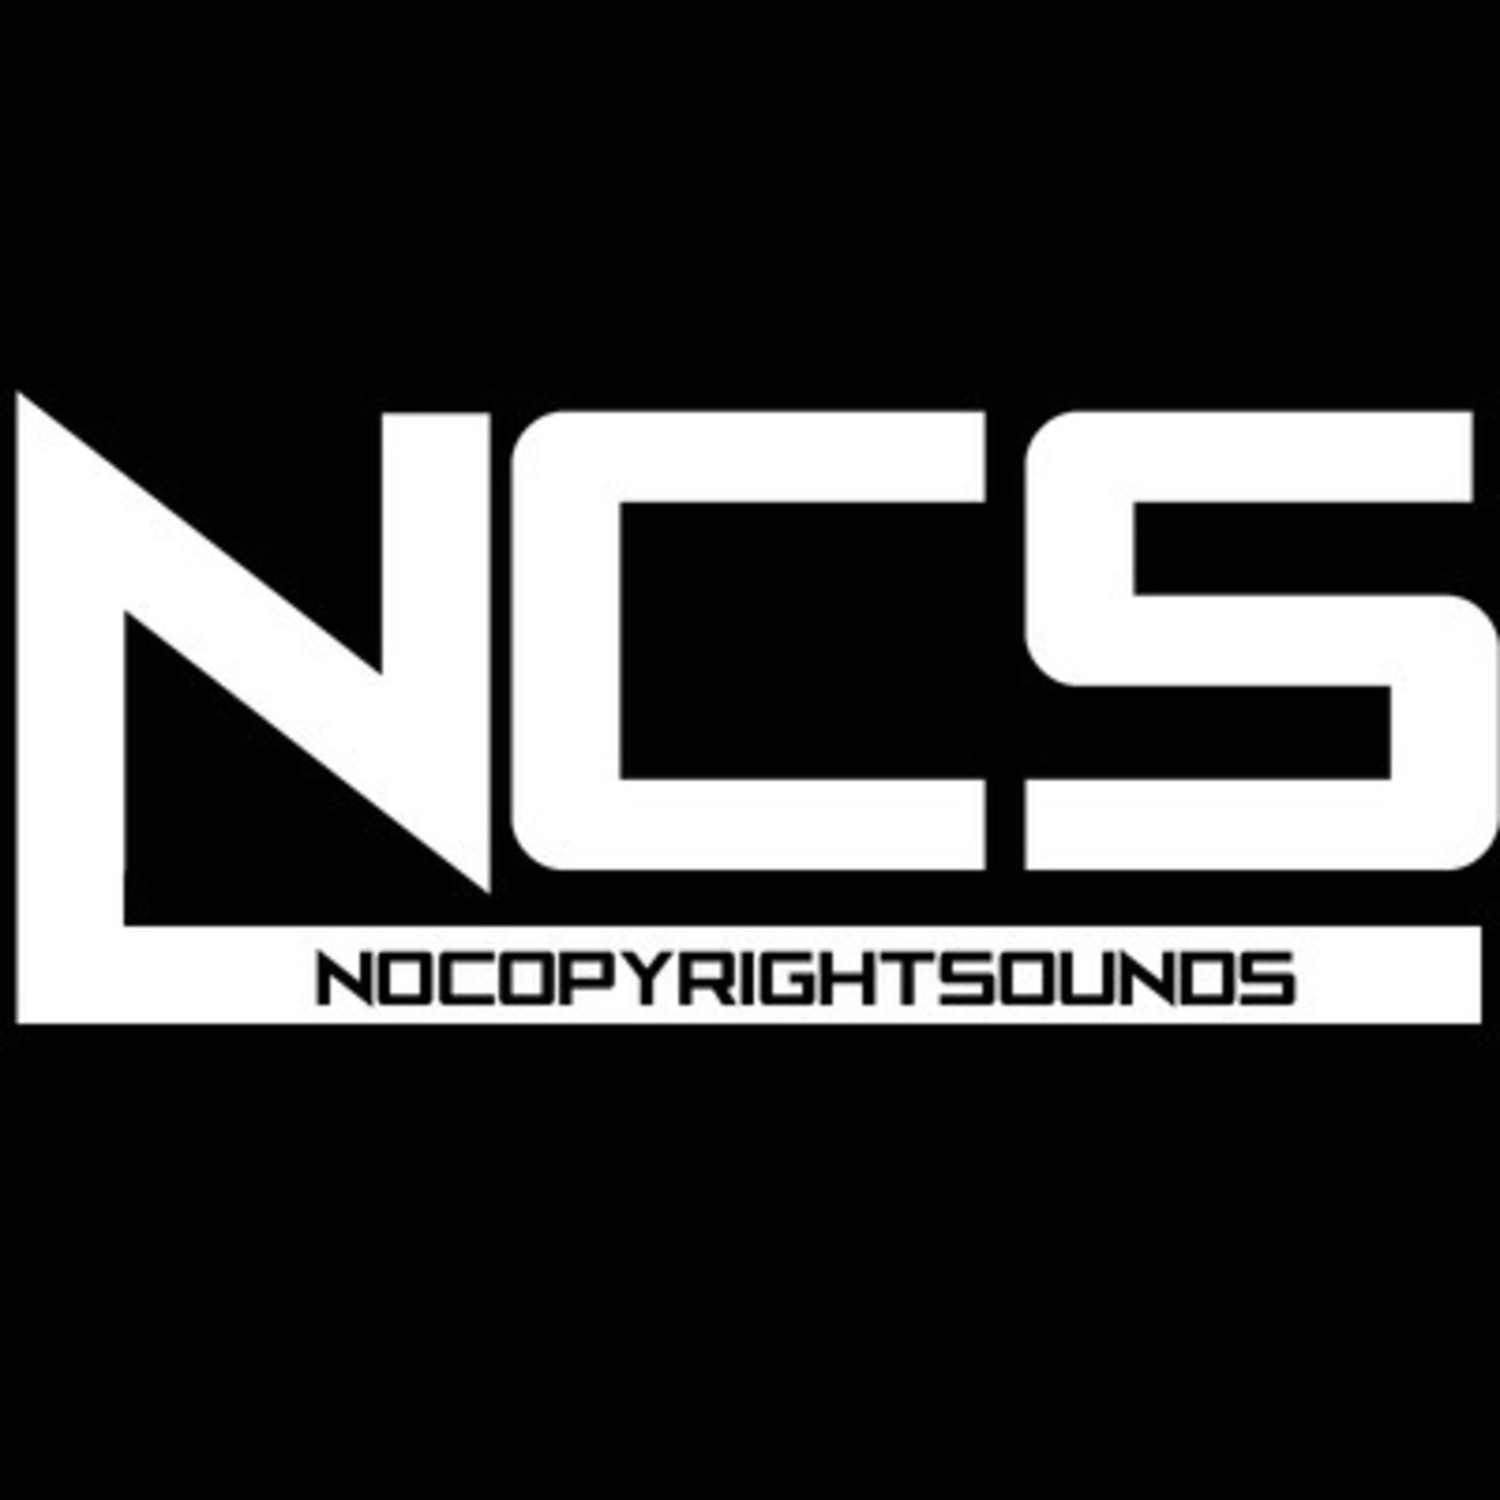 nocopyrightsounds